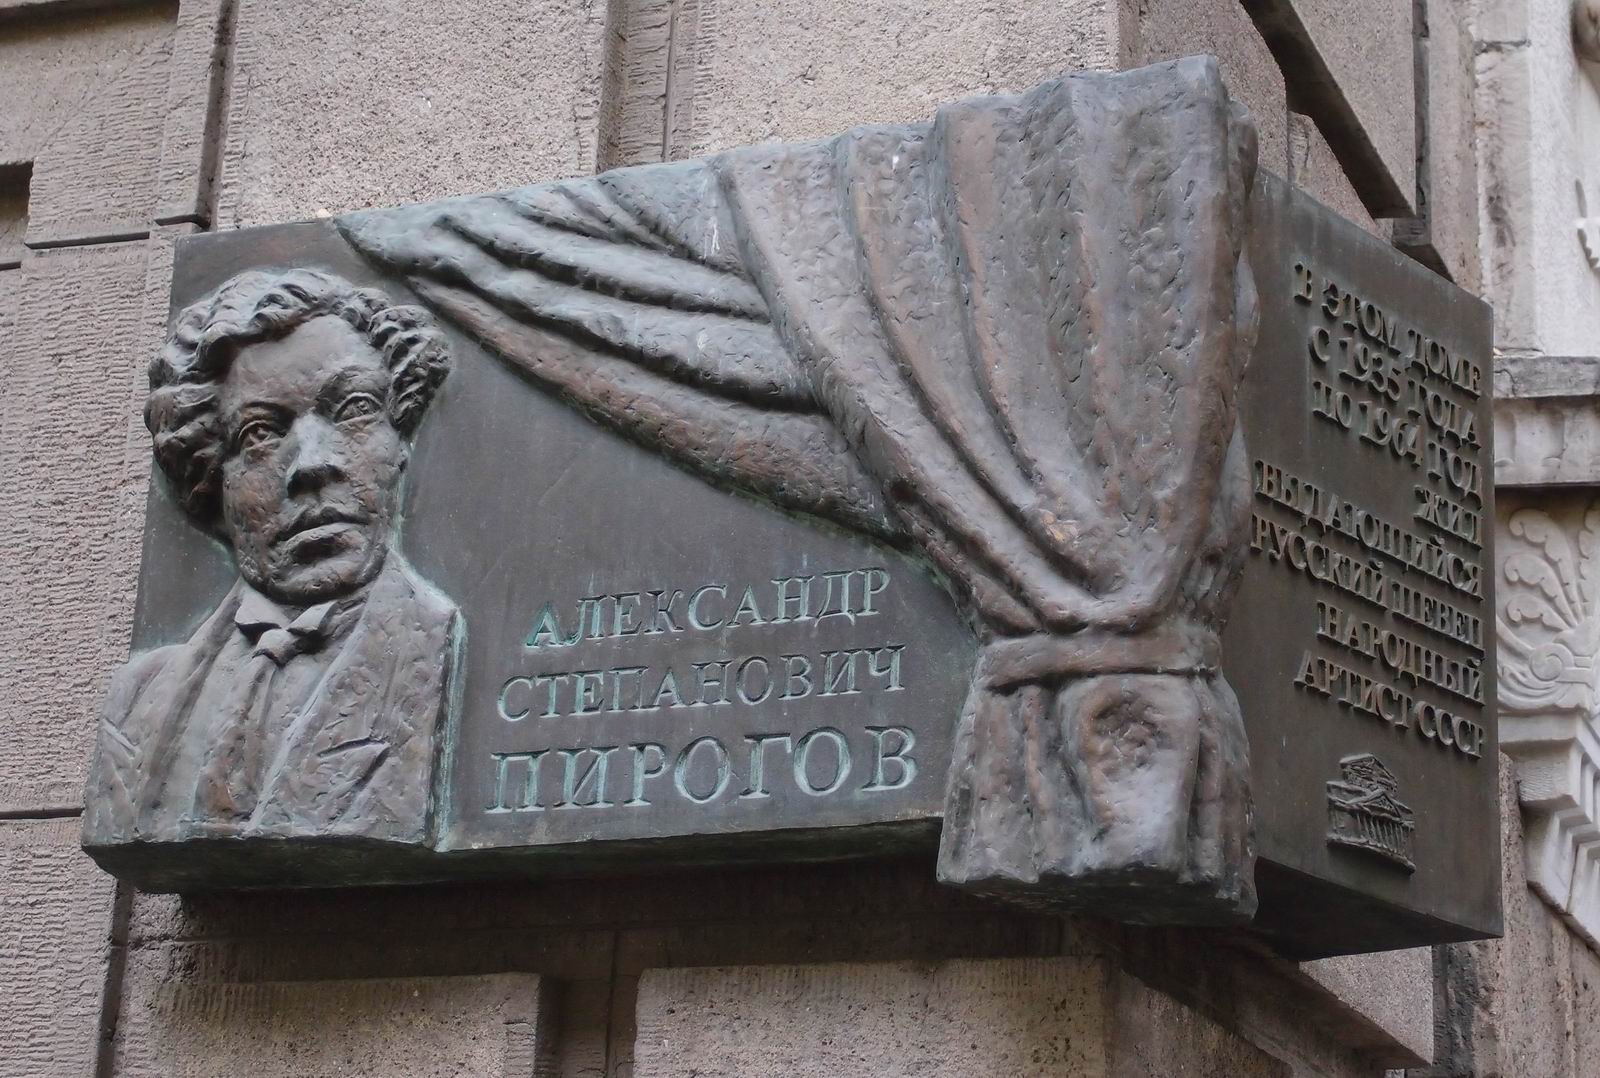 Мемориальная доска Пирогову А.С. (1899-1964), ск. И.Новиков, арх. А.Тихонов, в Брюсовом переулке, дом 7, открыта в 2001.